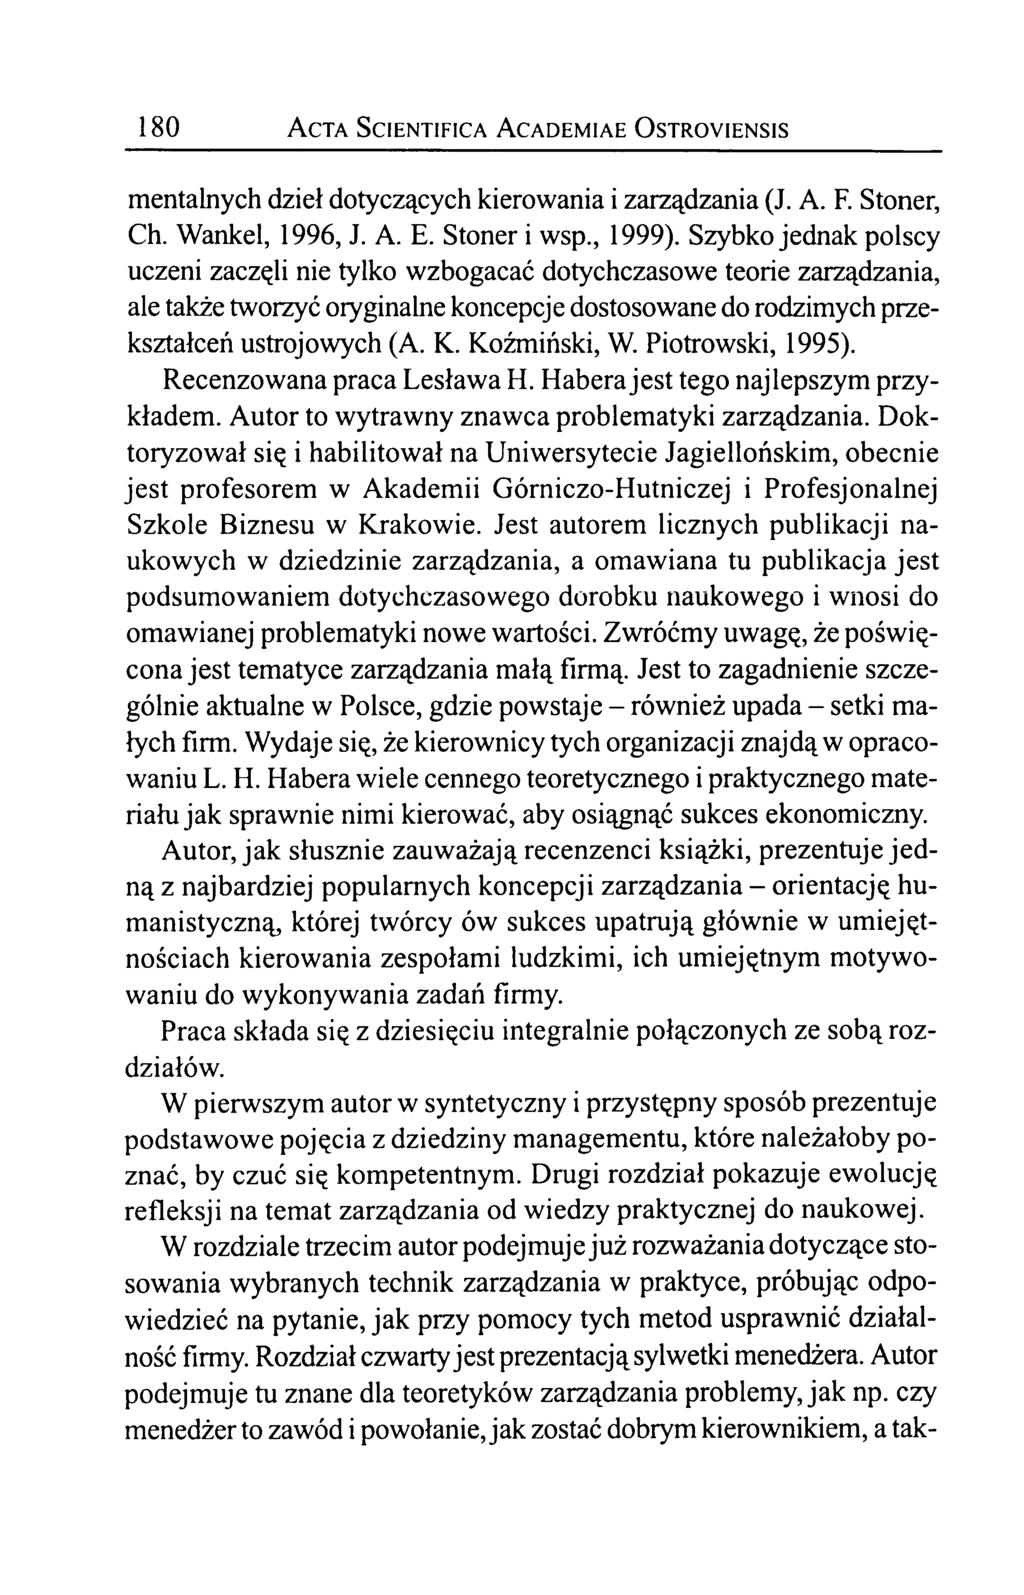 180 A cta Scientifica A cademiae O stroyiensis mentalnych dzieł dotyczących kierowania i zarządzania (J. A. F. Stoner, Ch. Wankel, 1996, J. A. E. Stoner i wsp., 1999).